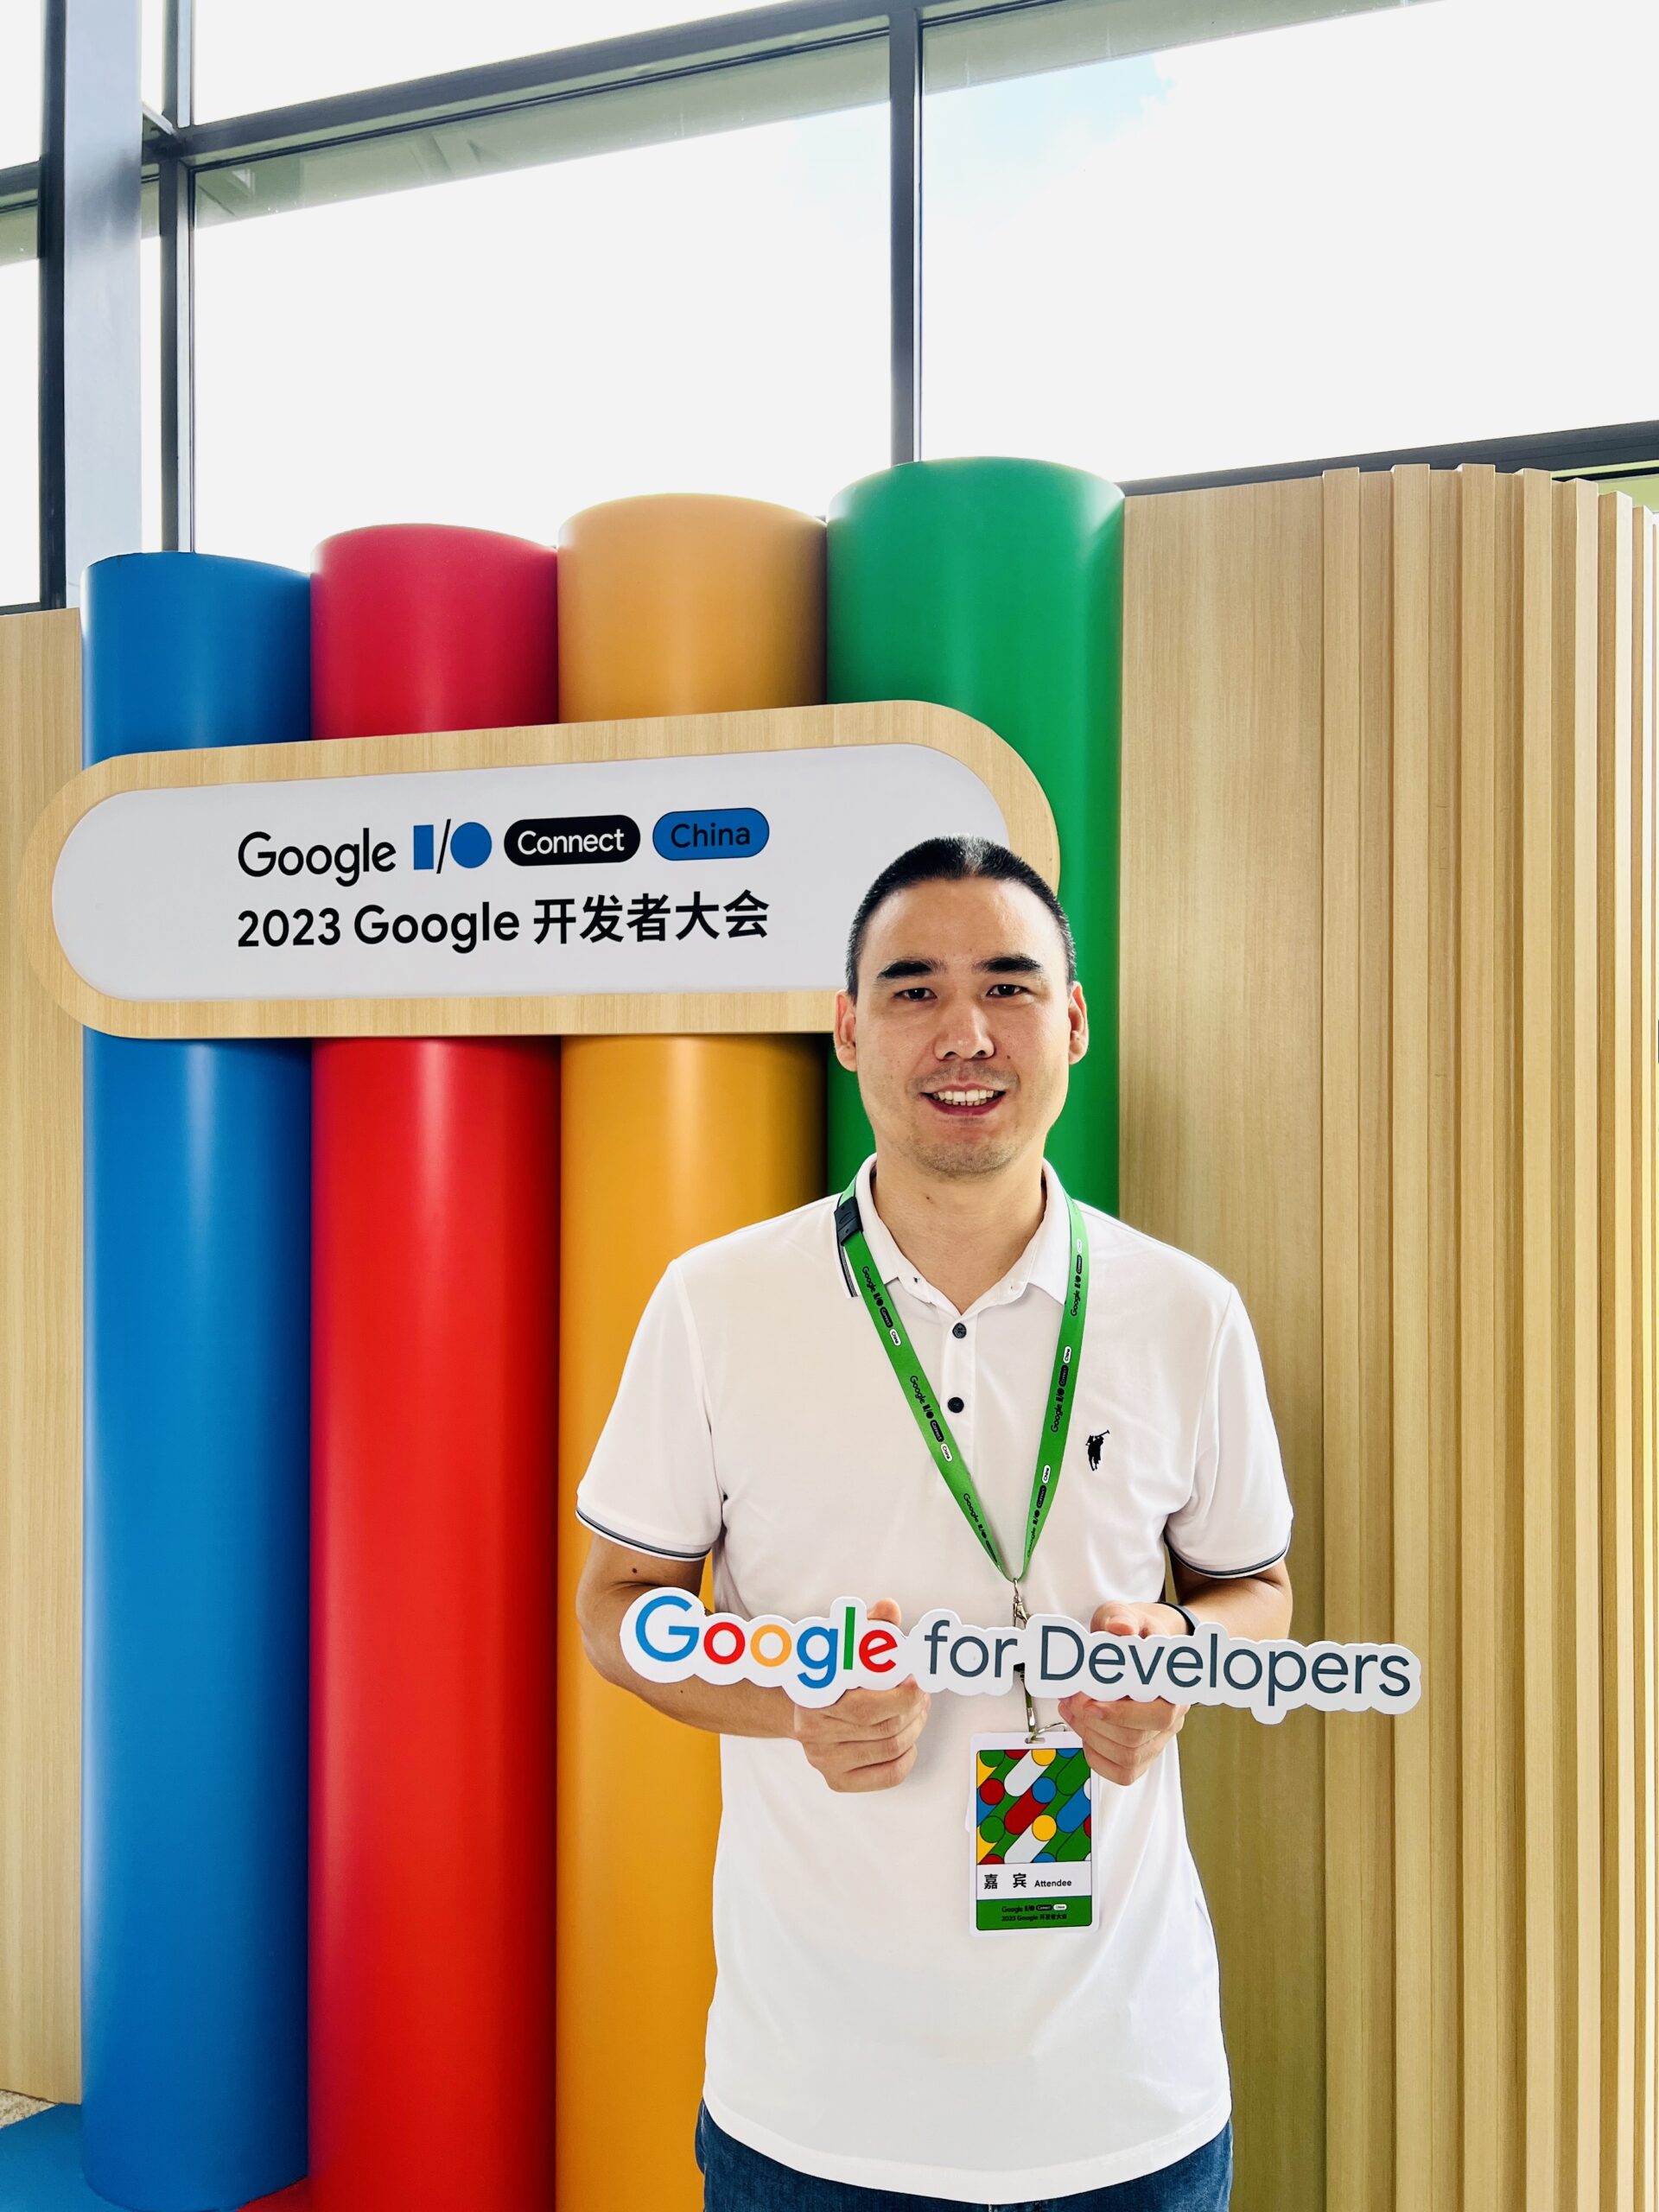 潘辰星 Google IO Connect 2023开发者大会打卡